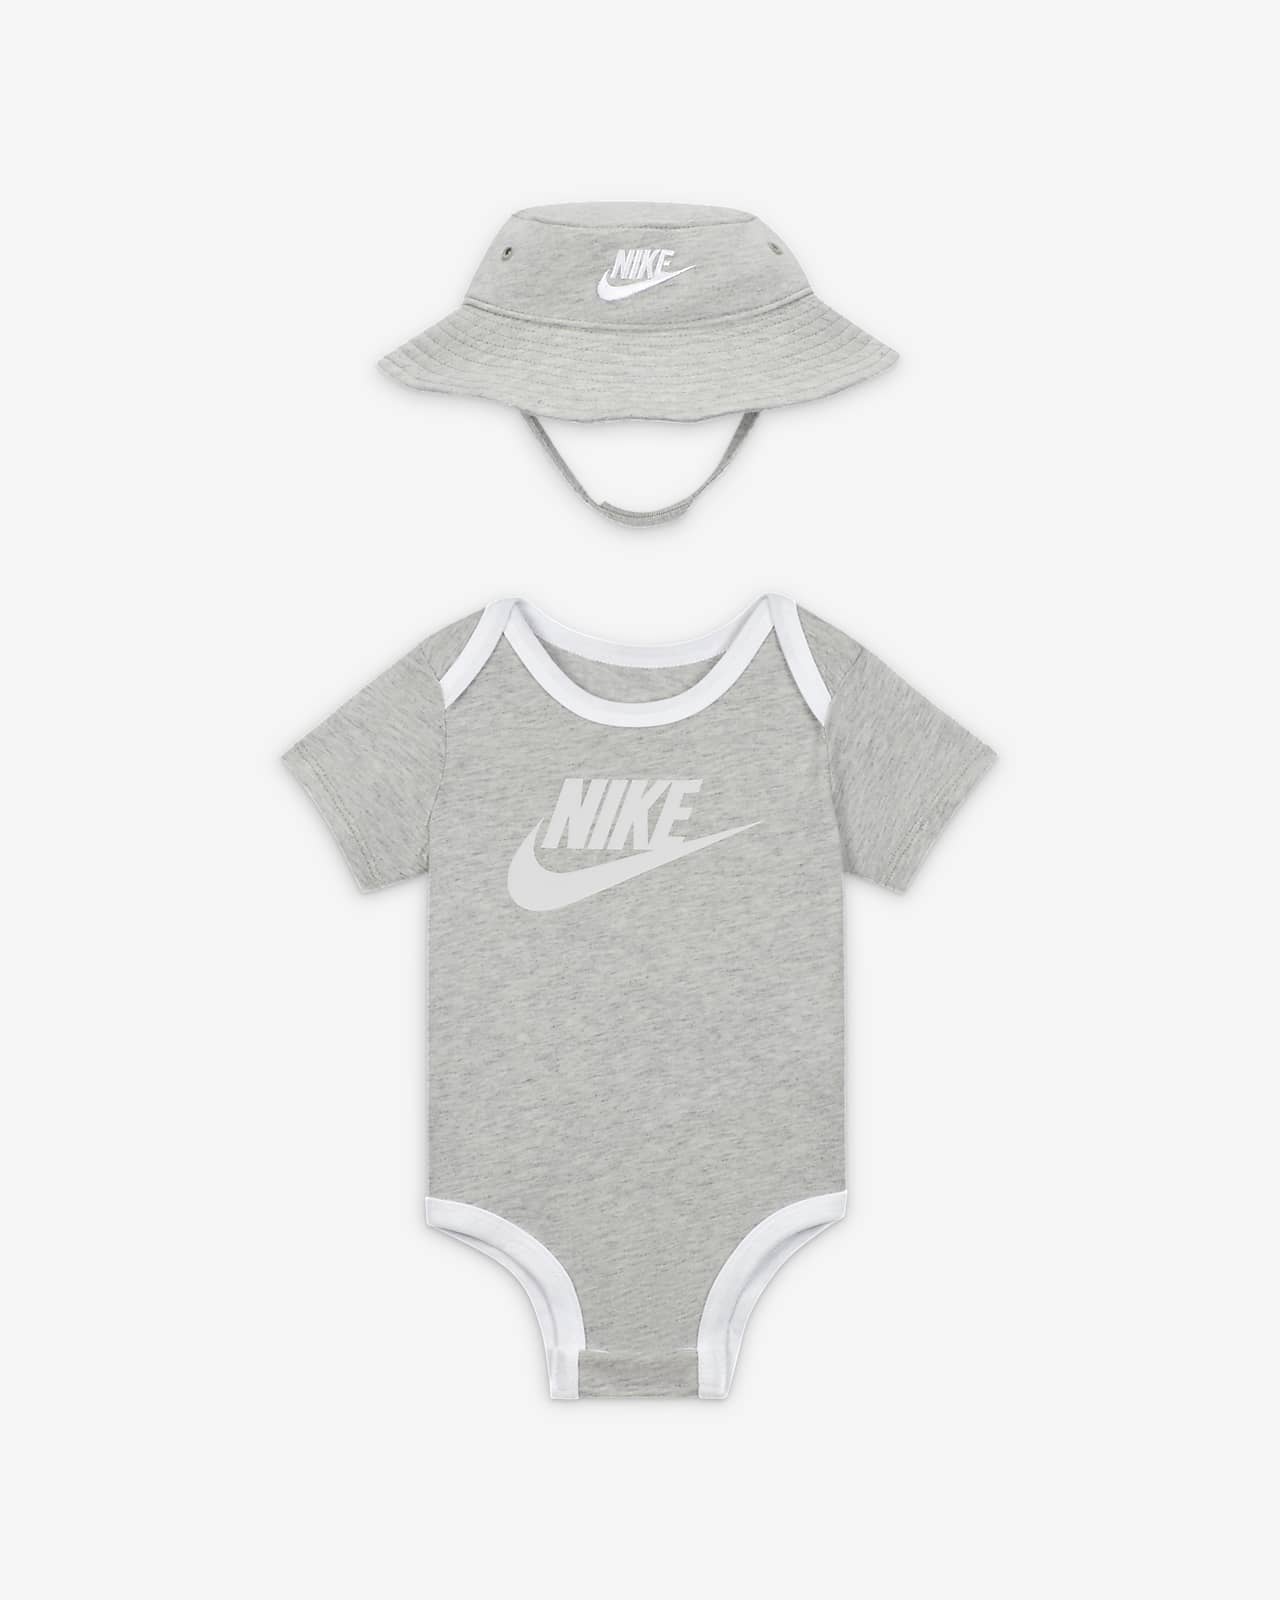 Nike ensemble bébé avec bob et body assorti Grey